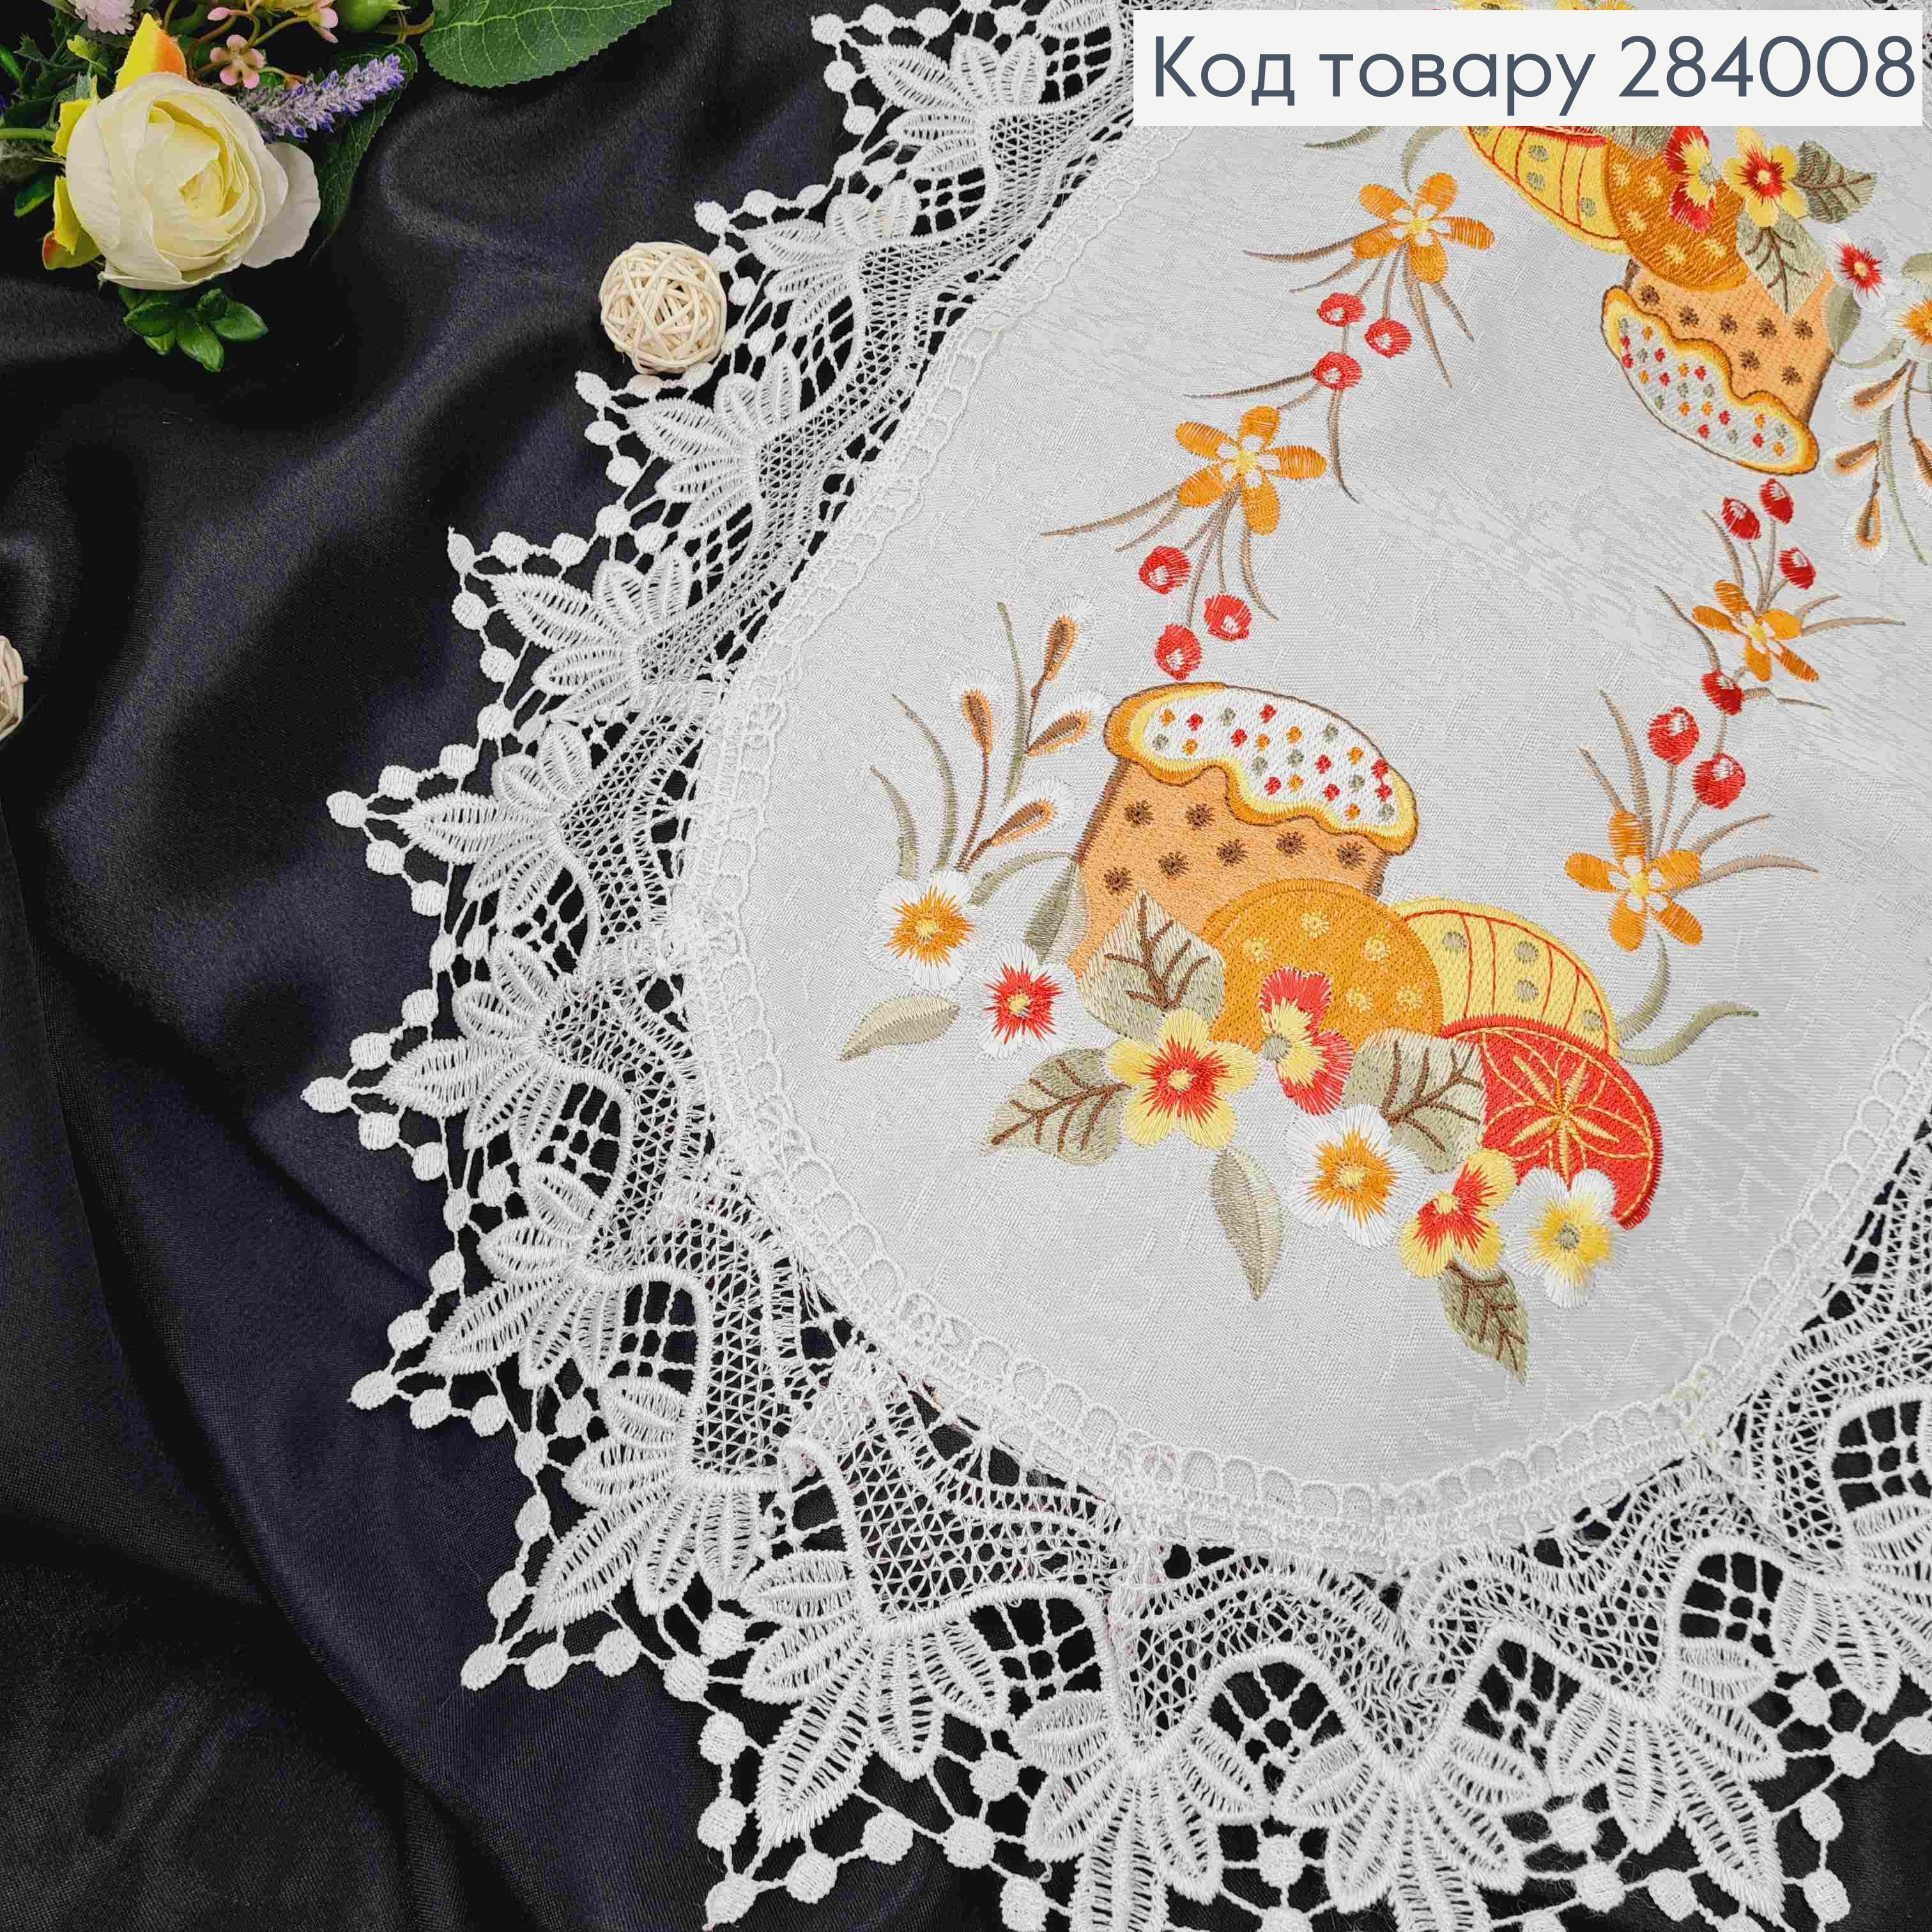 Пасхальная салфетка с белым кружевом "Пасхальная композиция в ярких красках", овальная 40*60см. 284008 фото 3